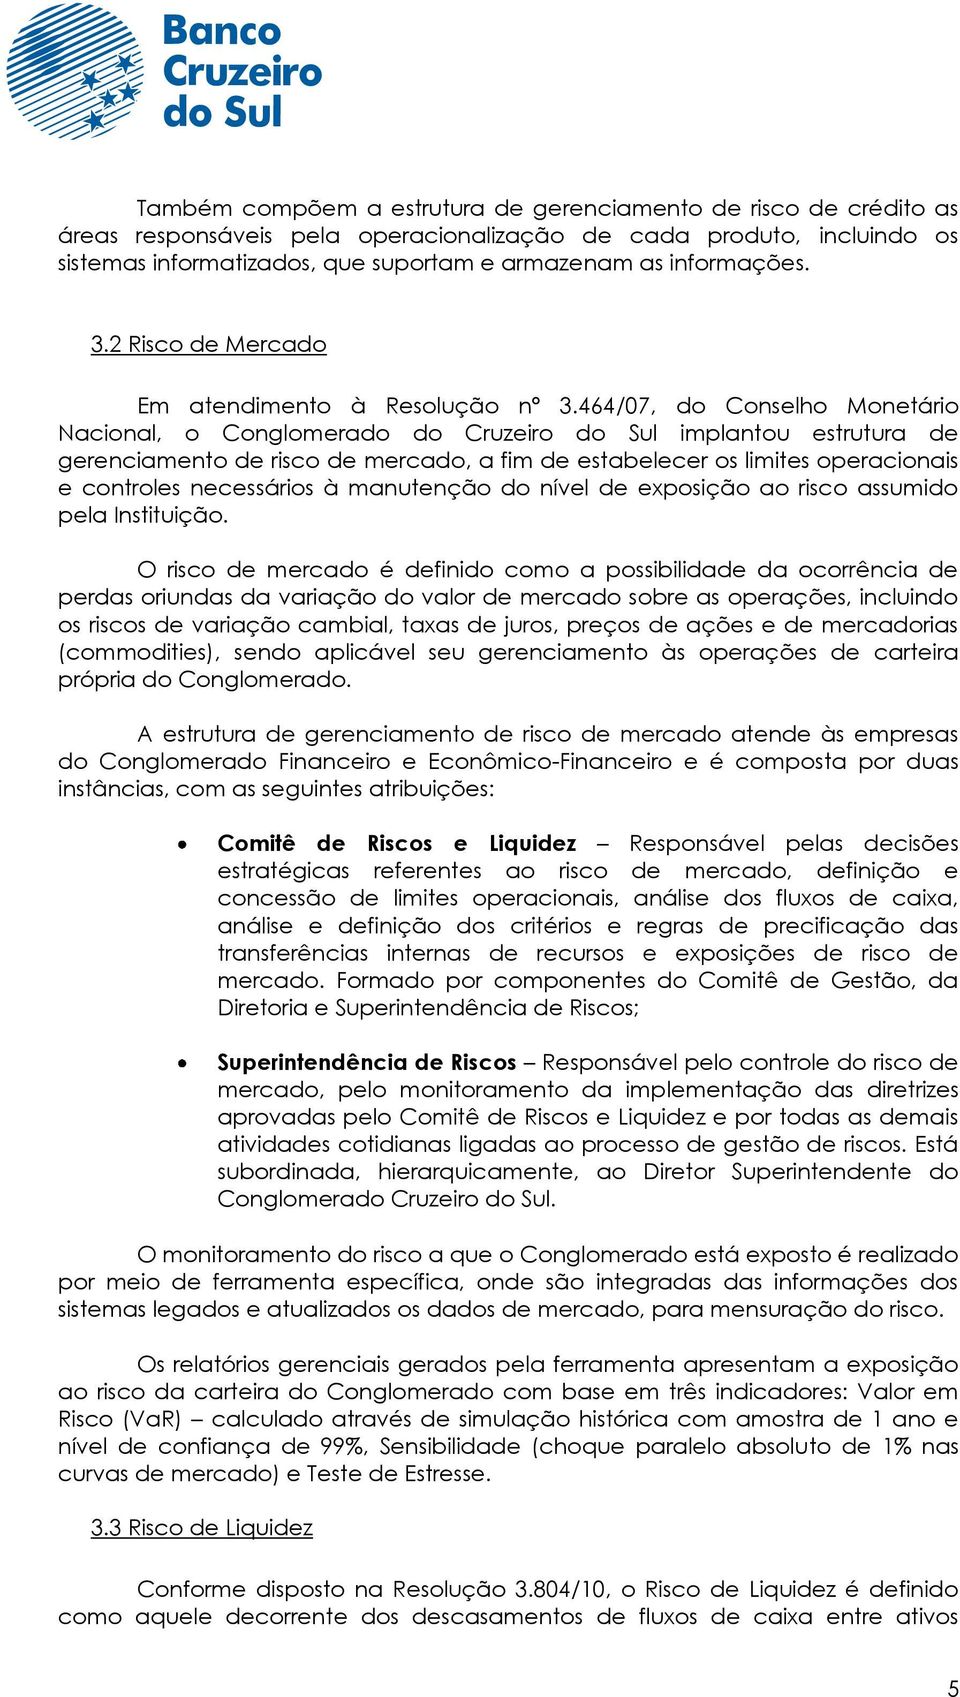 464/07, do Conselho Monetário Nacional, o Conglomerado do Cruzeiro do Sul implantou estrutura de gerenciamento de risco de mercado, a fim de estabelecer os limites operacionais e controles